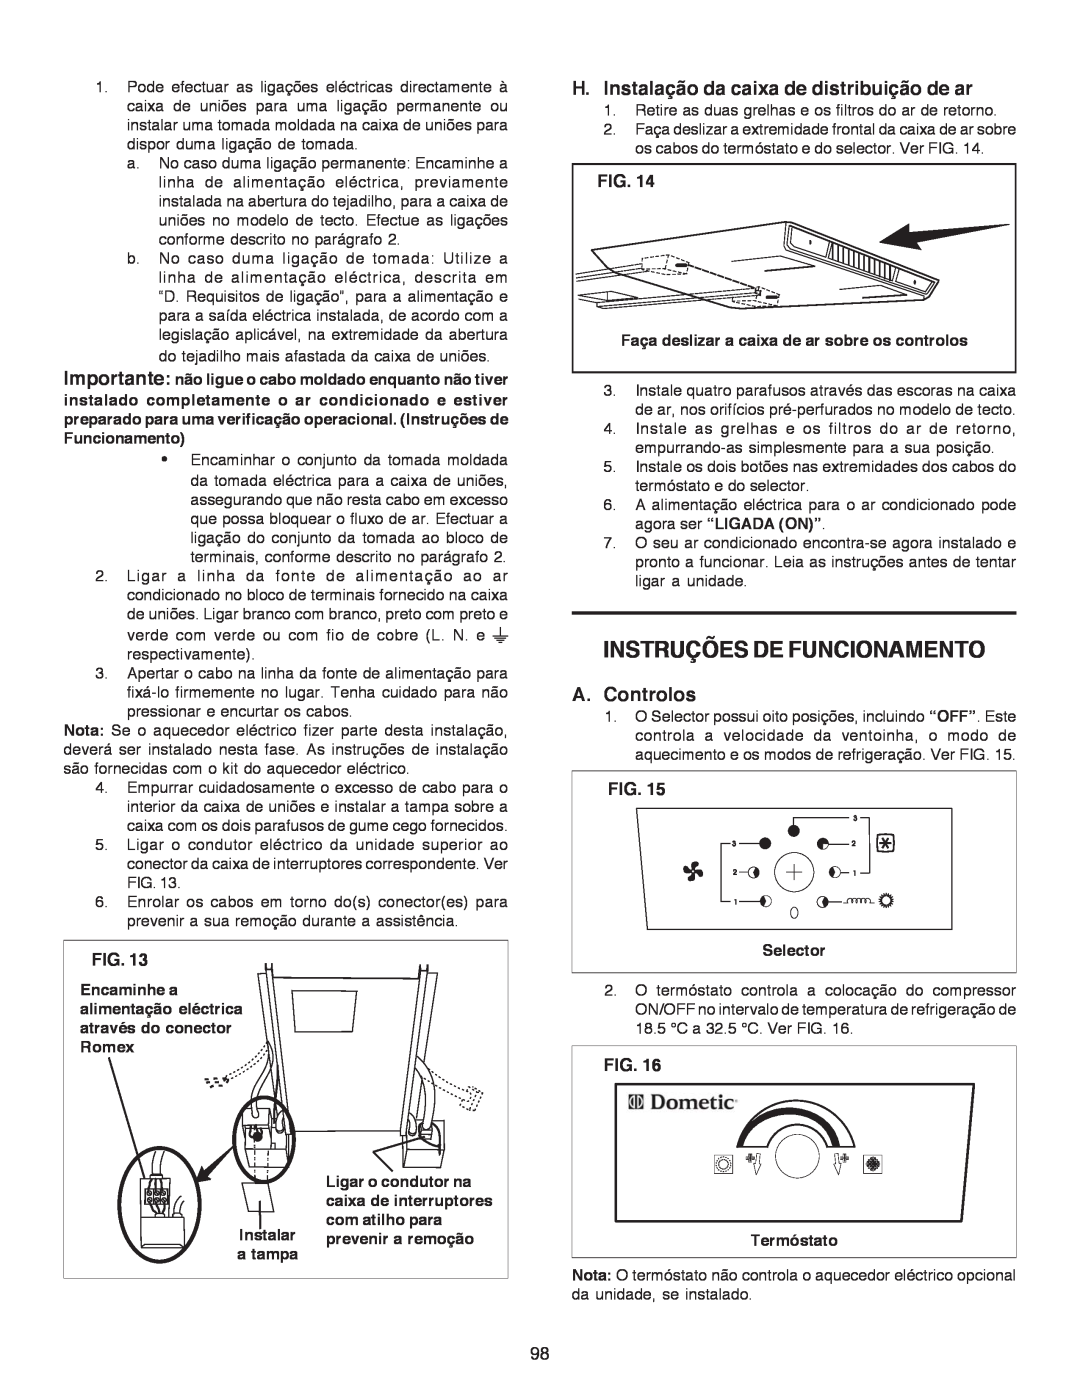 Dometic B3200 manual Instruções De Funcionamento, H.Instalação da caixa de distribuição de ar, A.Controlos, Fig 